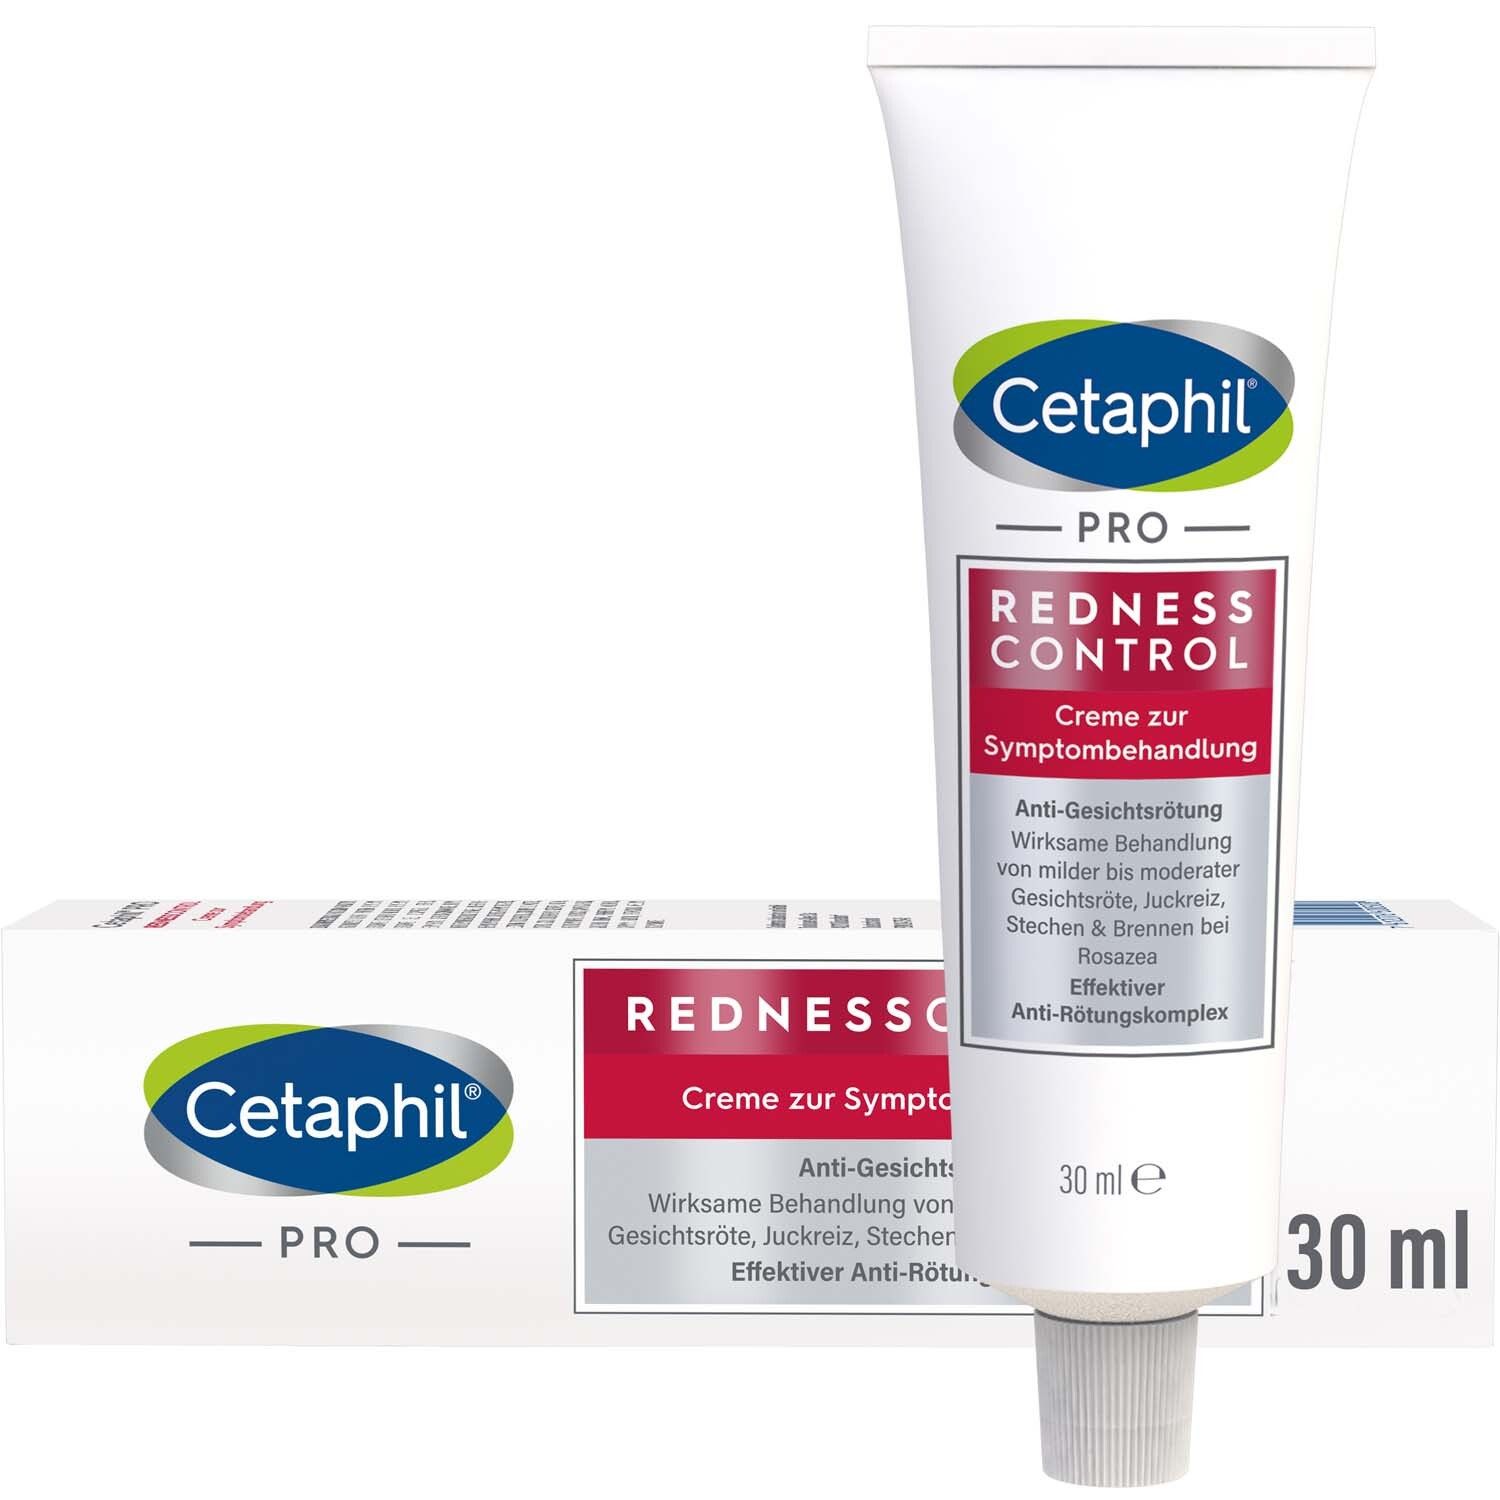 Cetaphil® RednessControl Creme zur Symptombehandlung